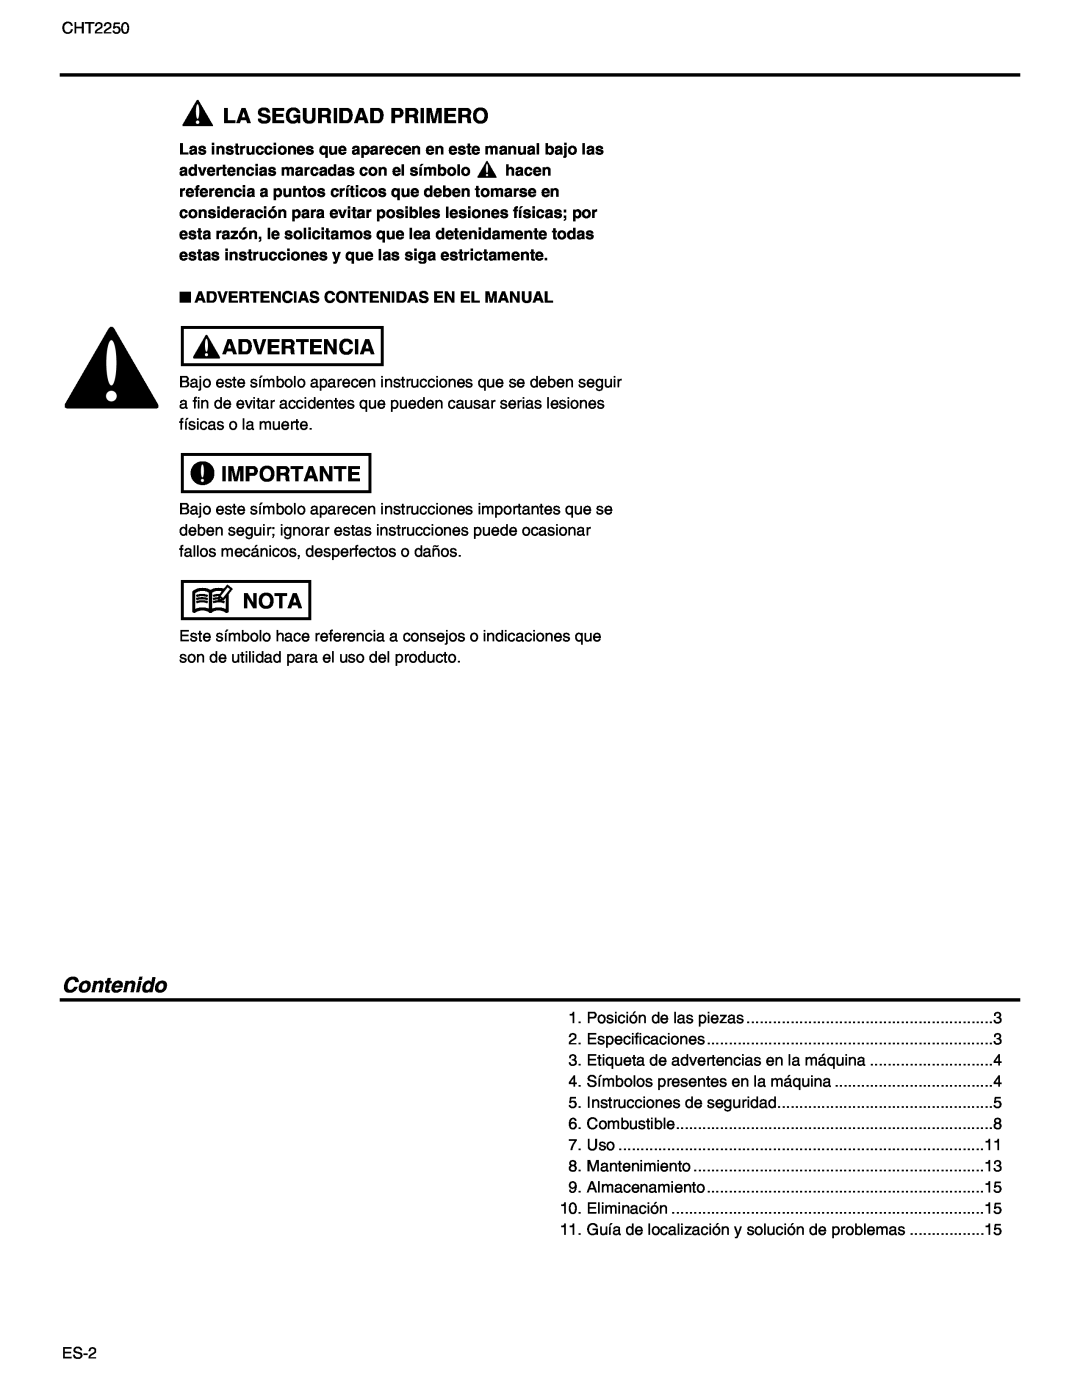 RedMax CHT2250 manual La Seguridad Primero, Advertencia, Importante, Nota, Contenido 